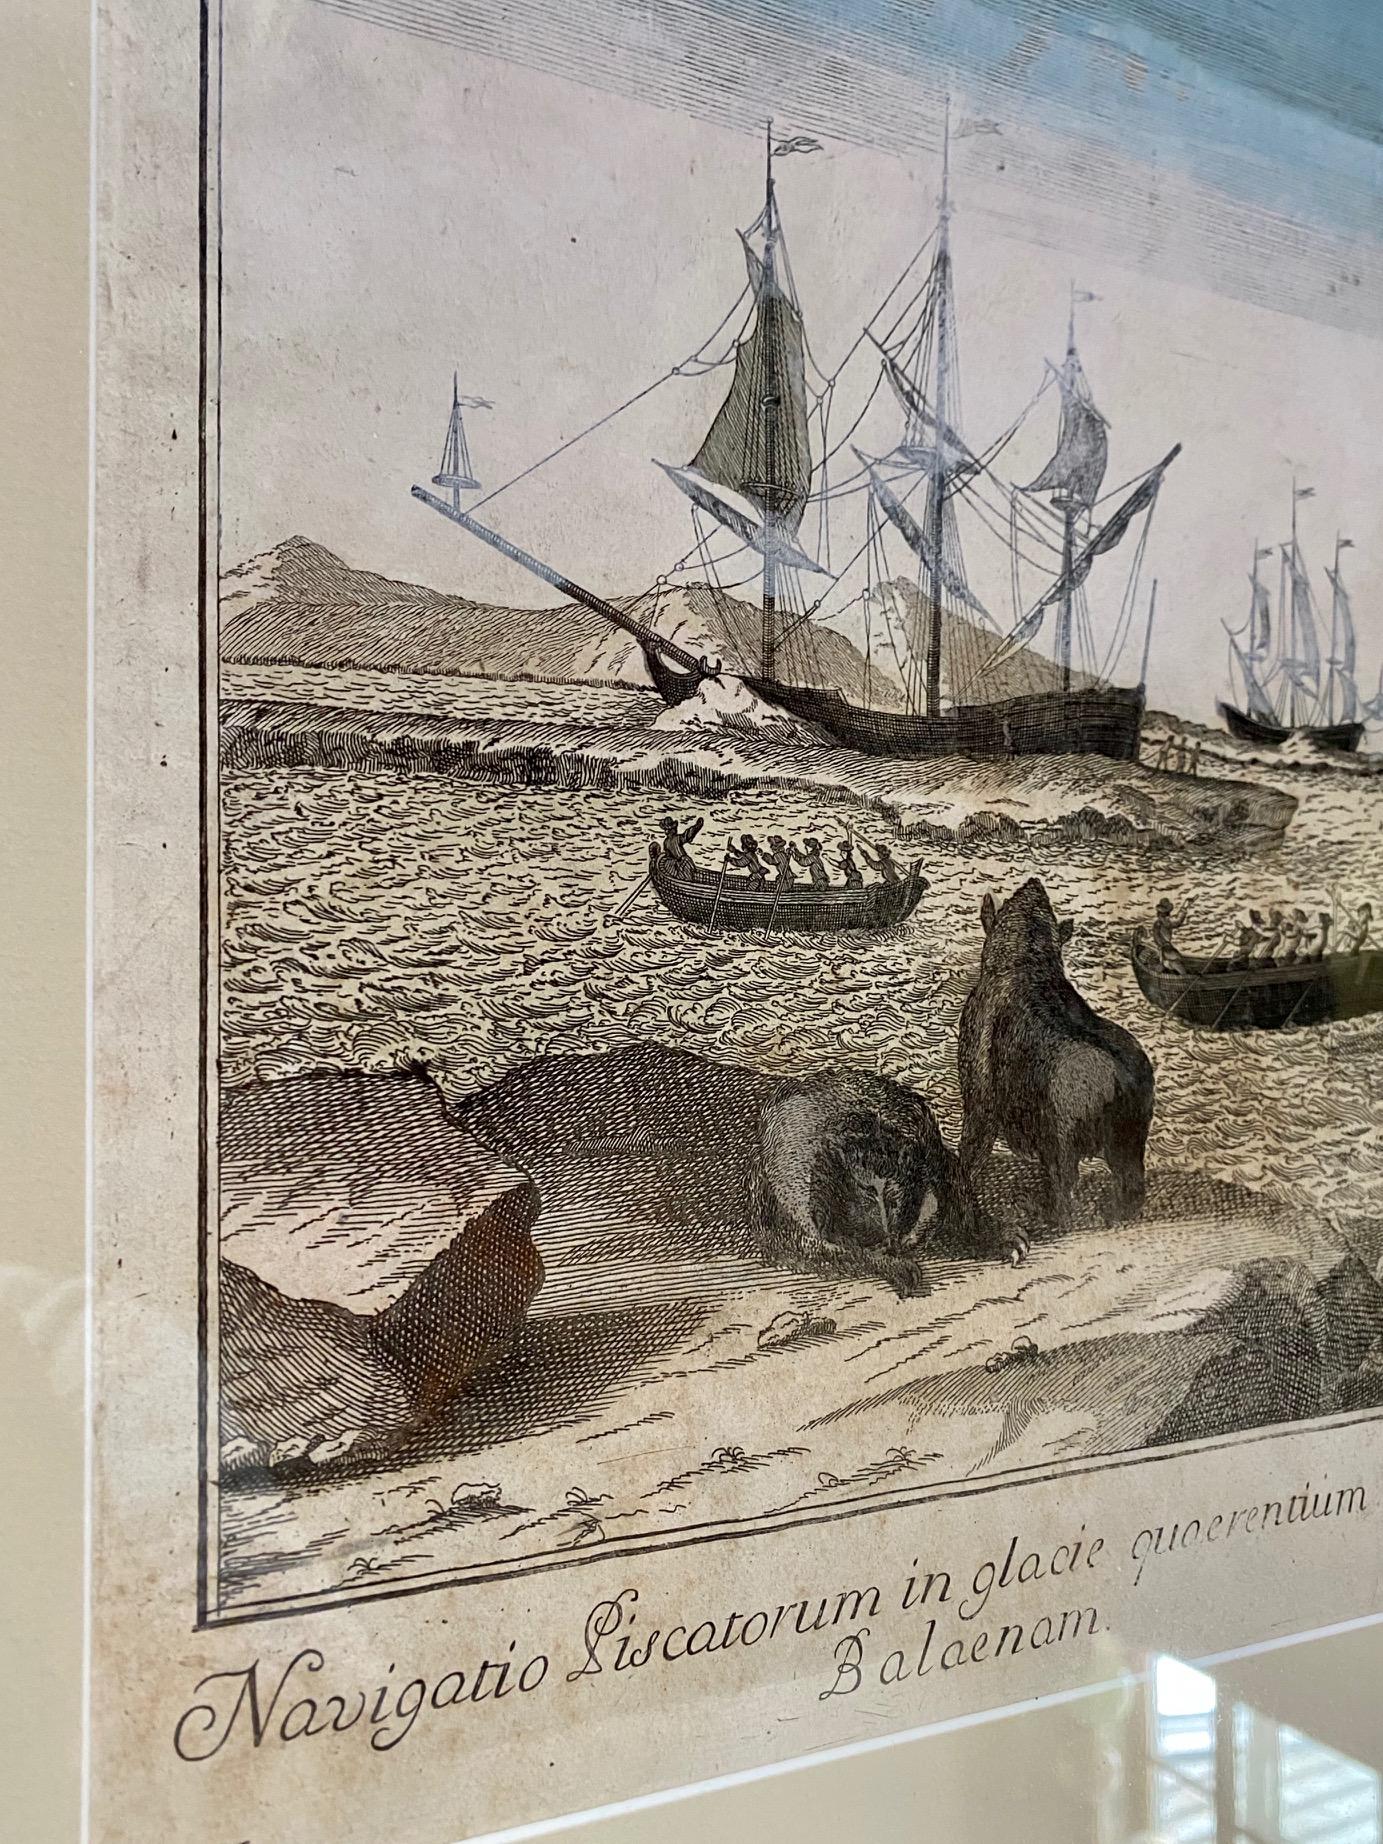 Sehr früher holländischer Holzschnitt aus dem 18. Jahrhundert über die nördliche Walfischerei, um 1720, ein handkolorierter Stich, der die holländische Walfangflotte in einer nördlichen Bucht mit vielen Booten, einem großen Glattwal in der Mitte und